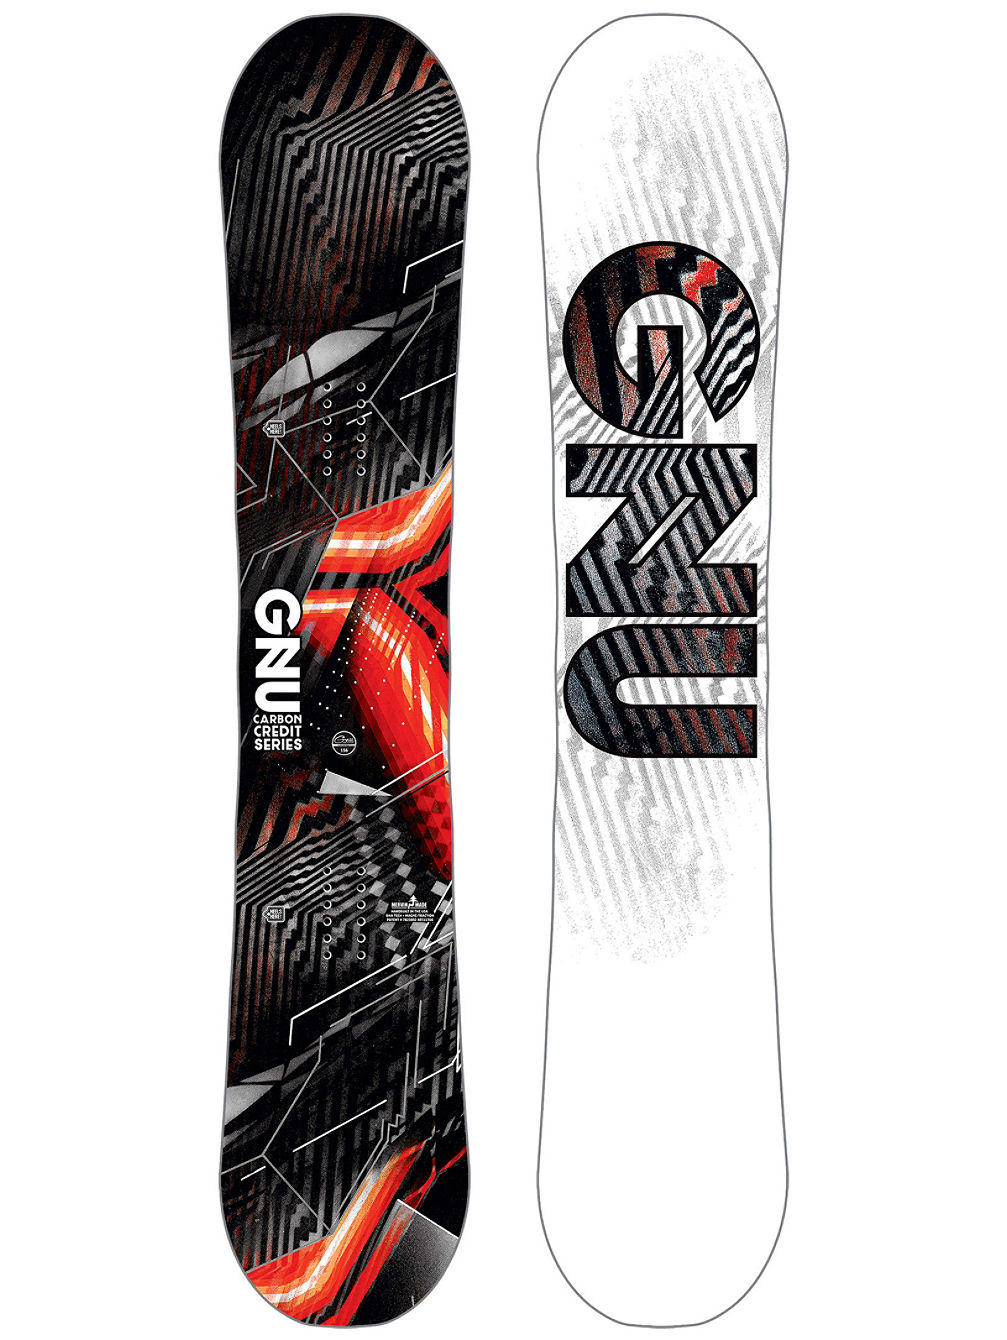 Asym Carbon Credit BTX 156 Snowboard